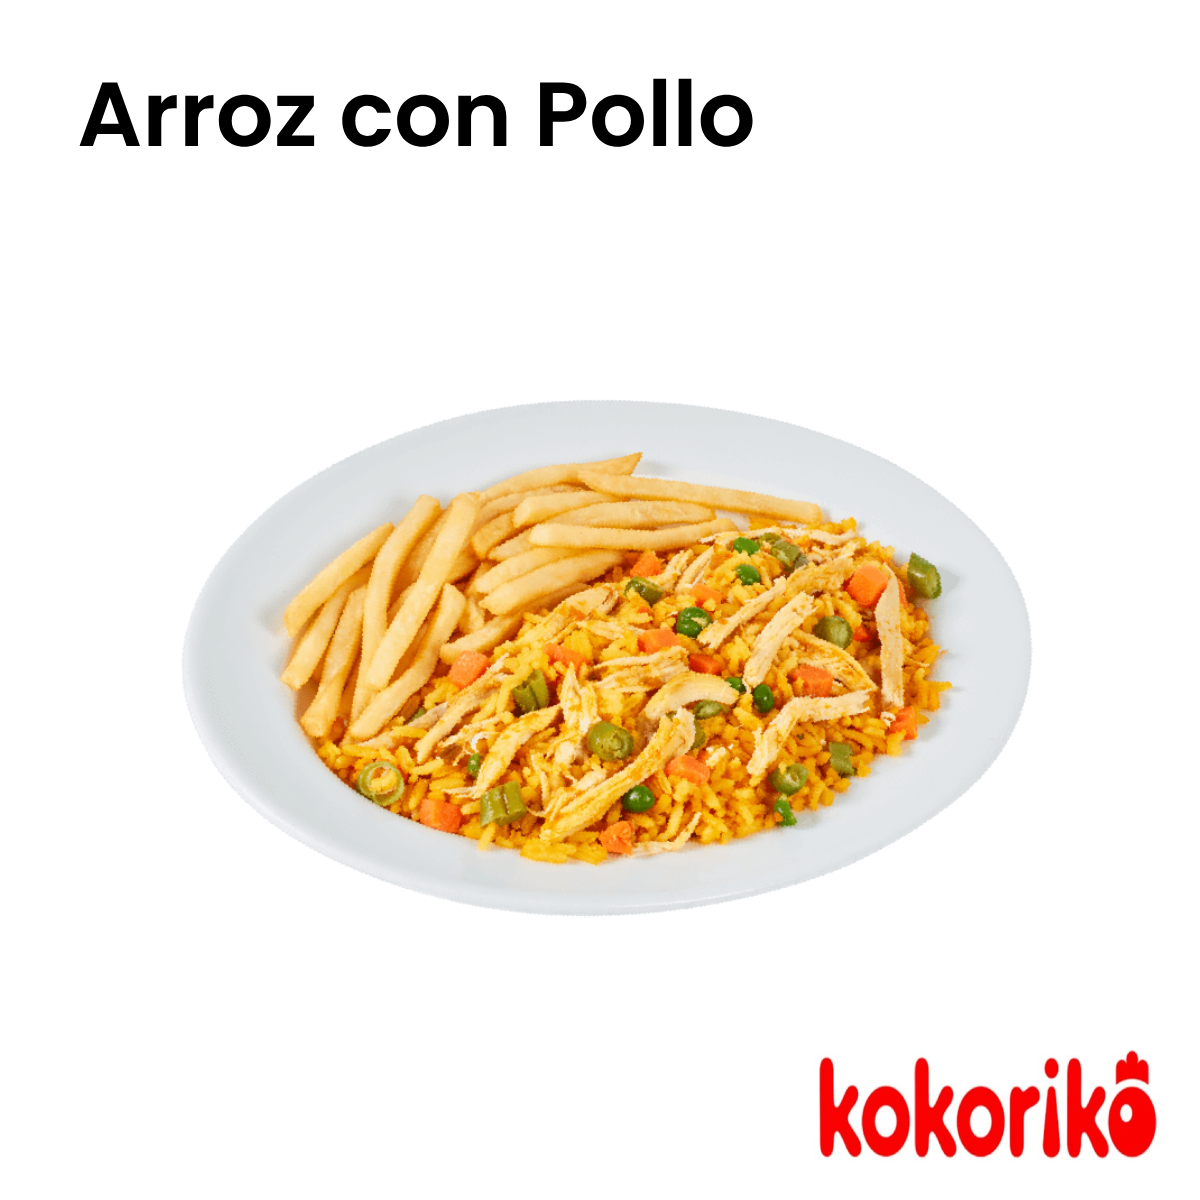 Bono Arroz con Pollo - Kokoriko